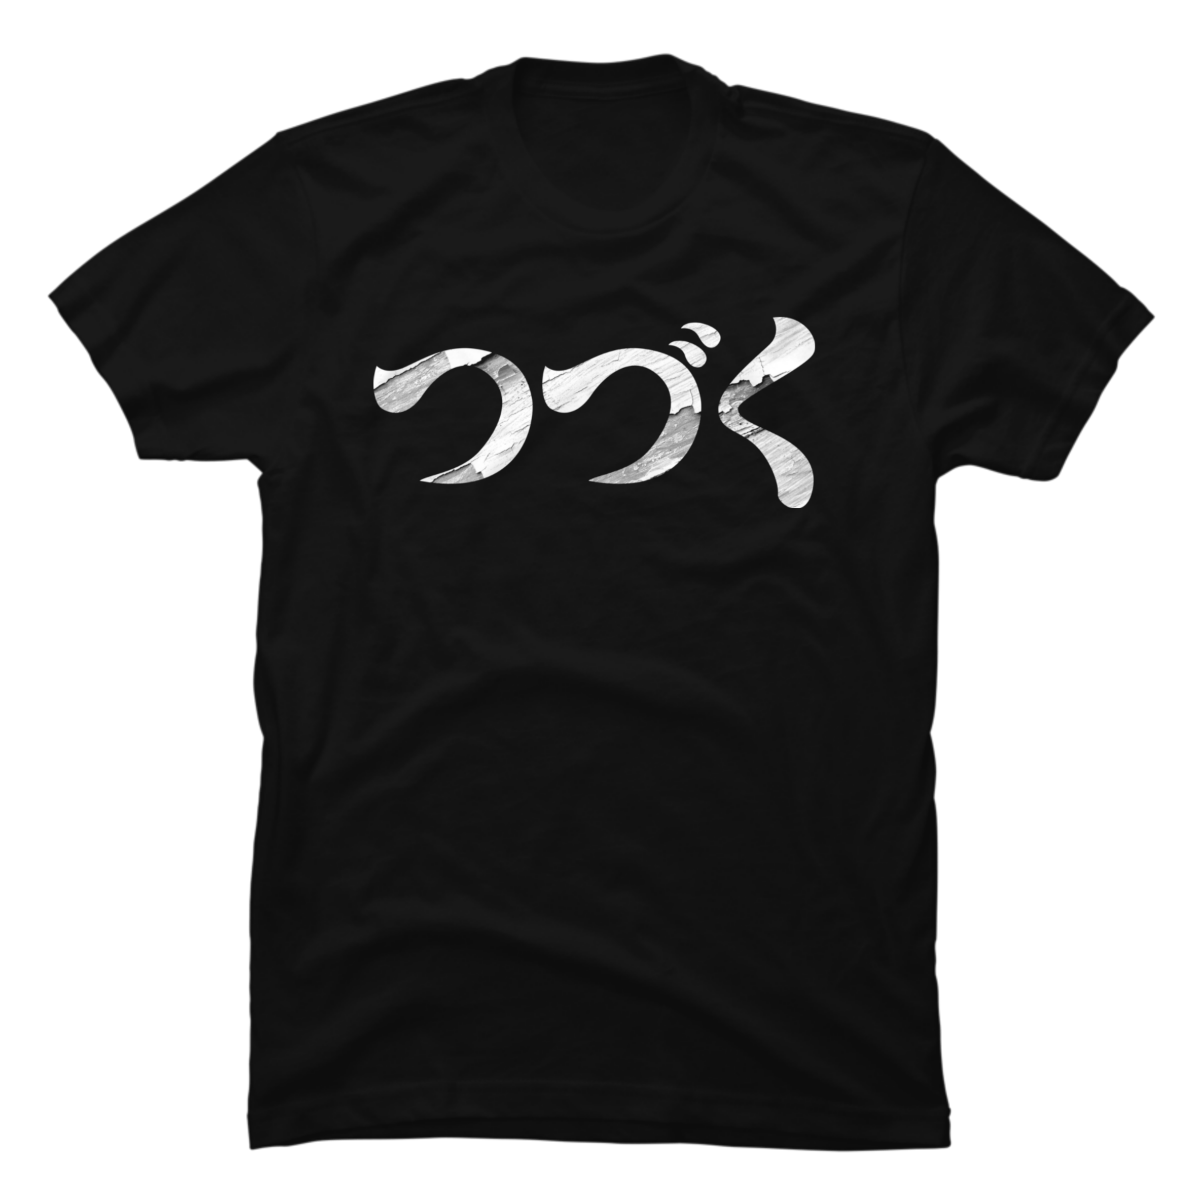 japanese kanji shirts